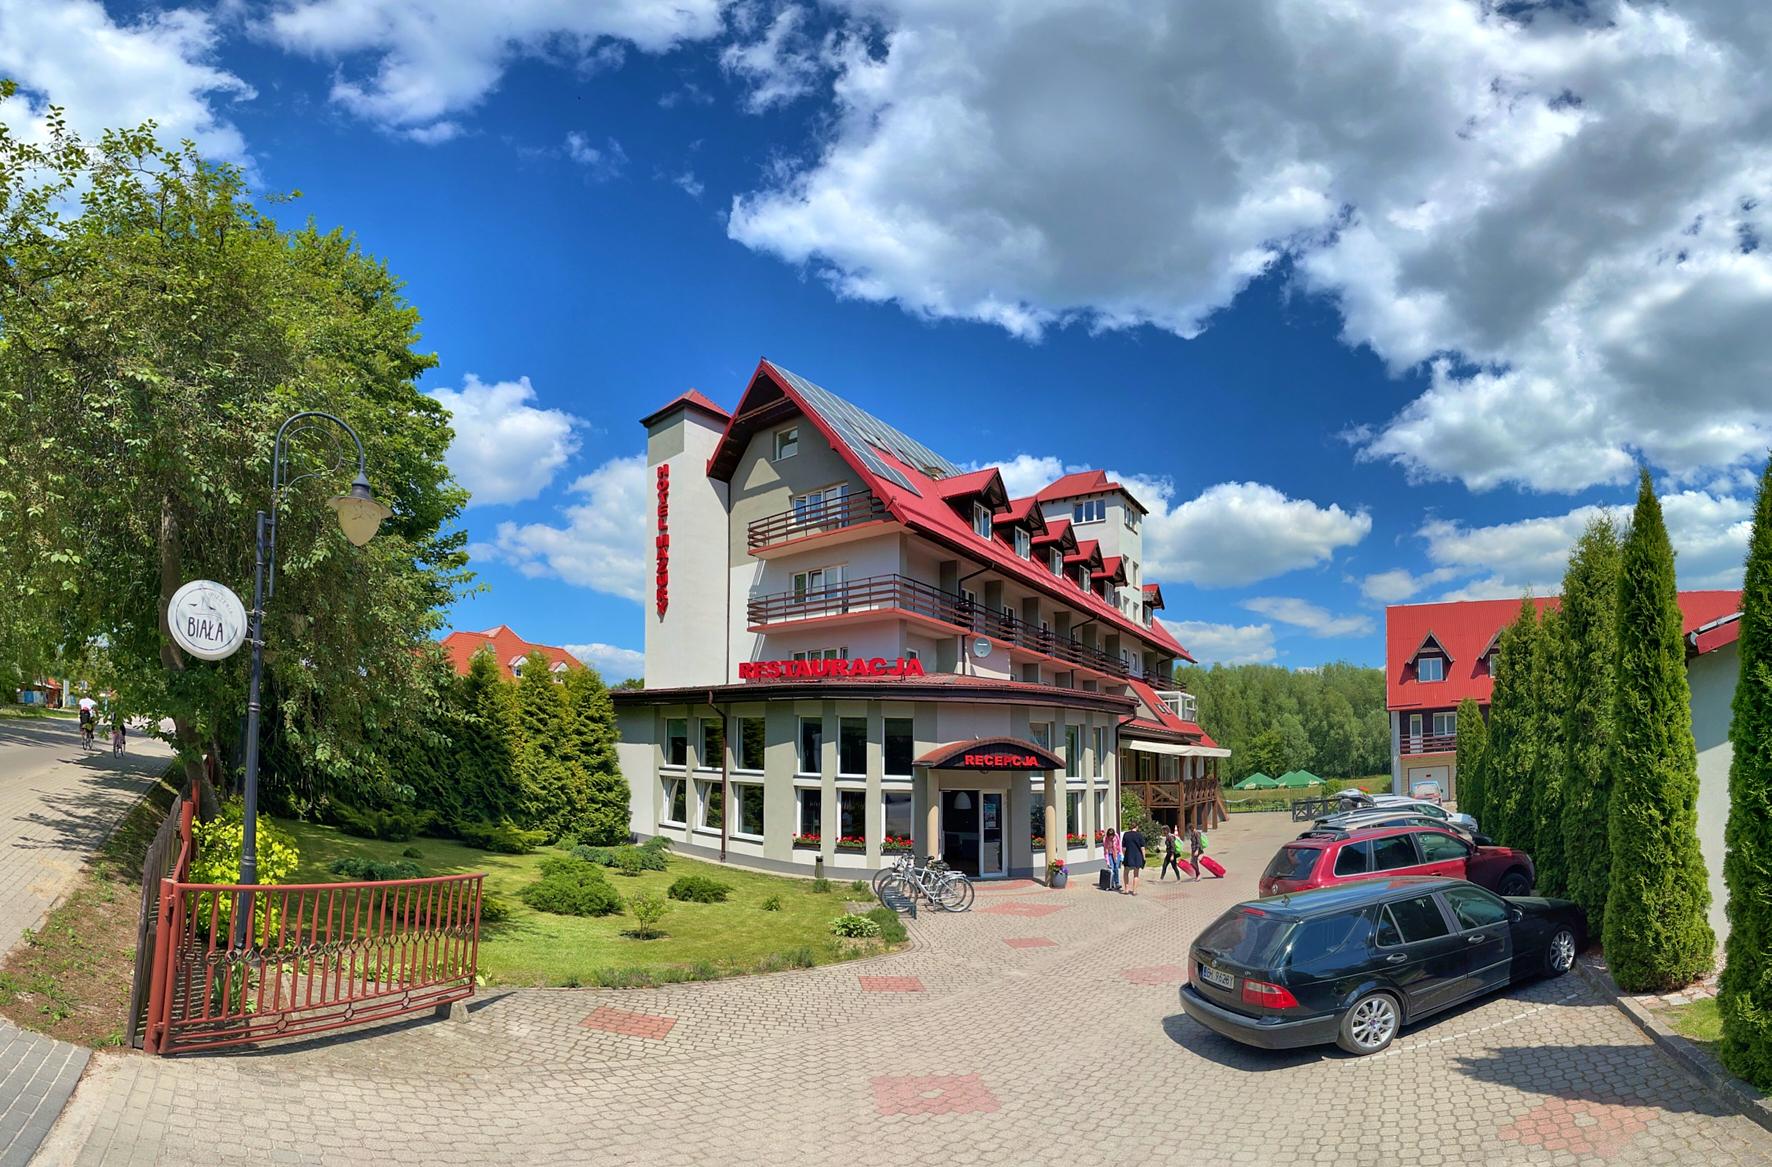 Hotel Mazury - Polska